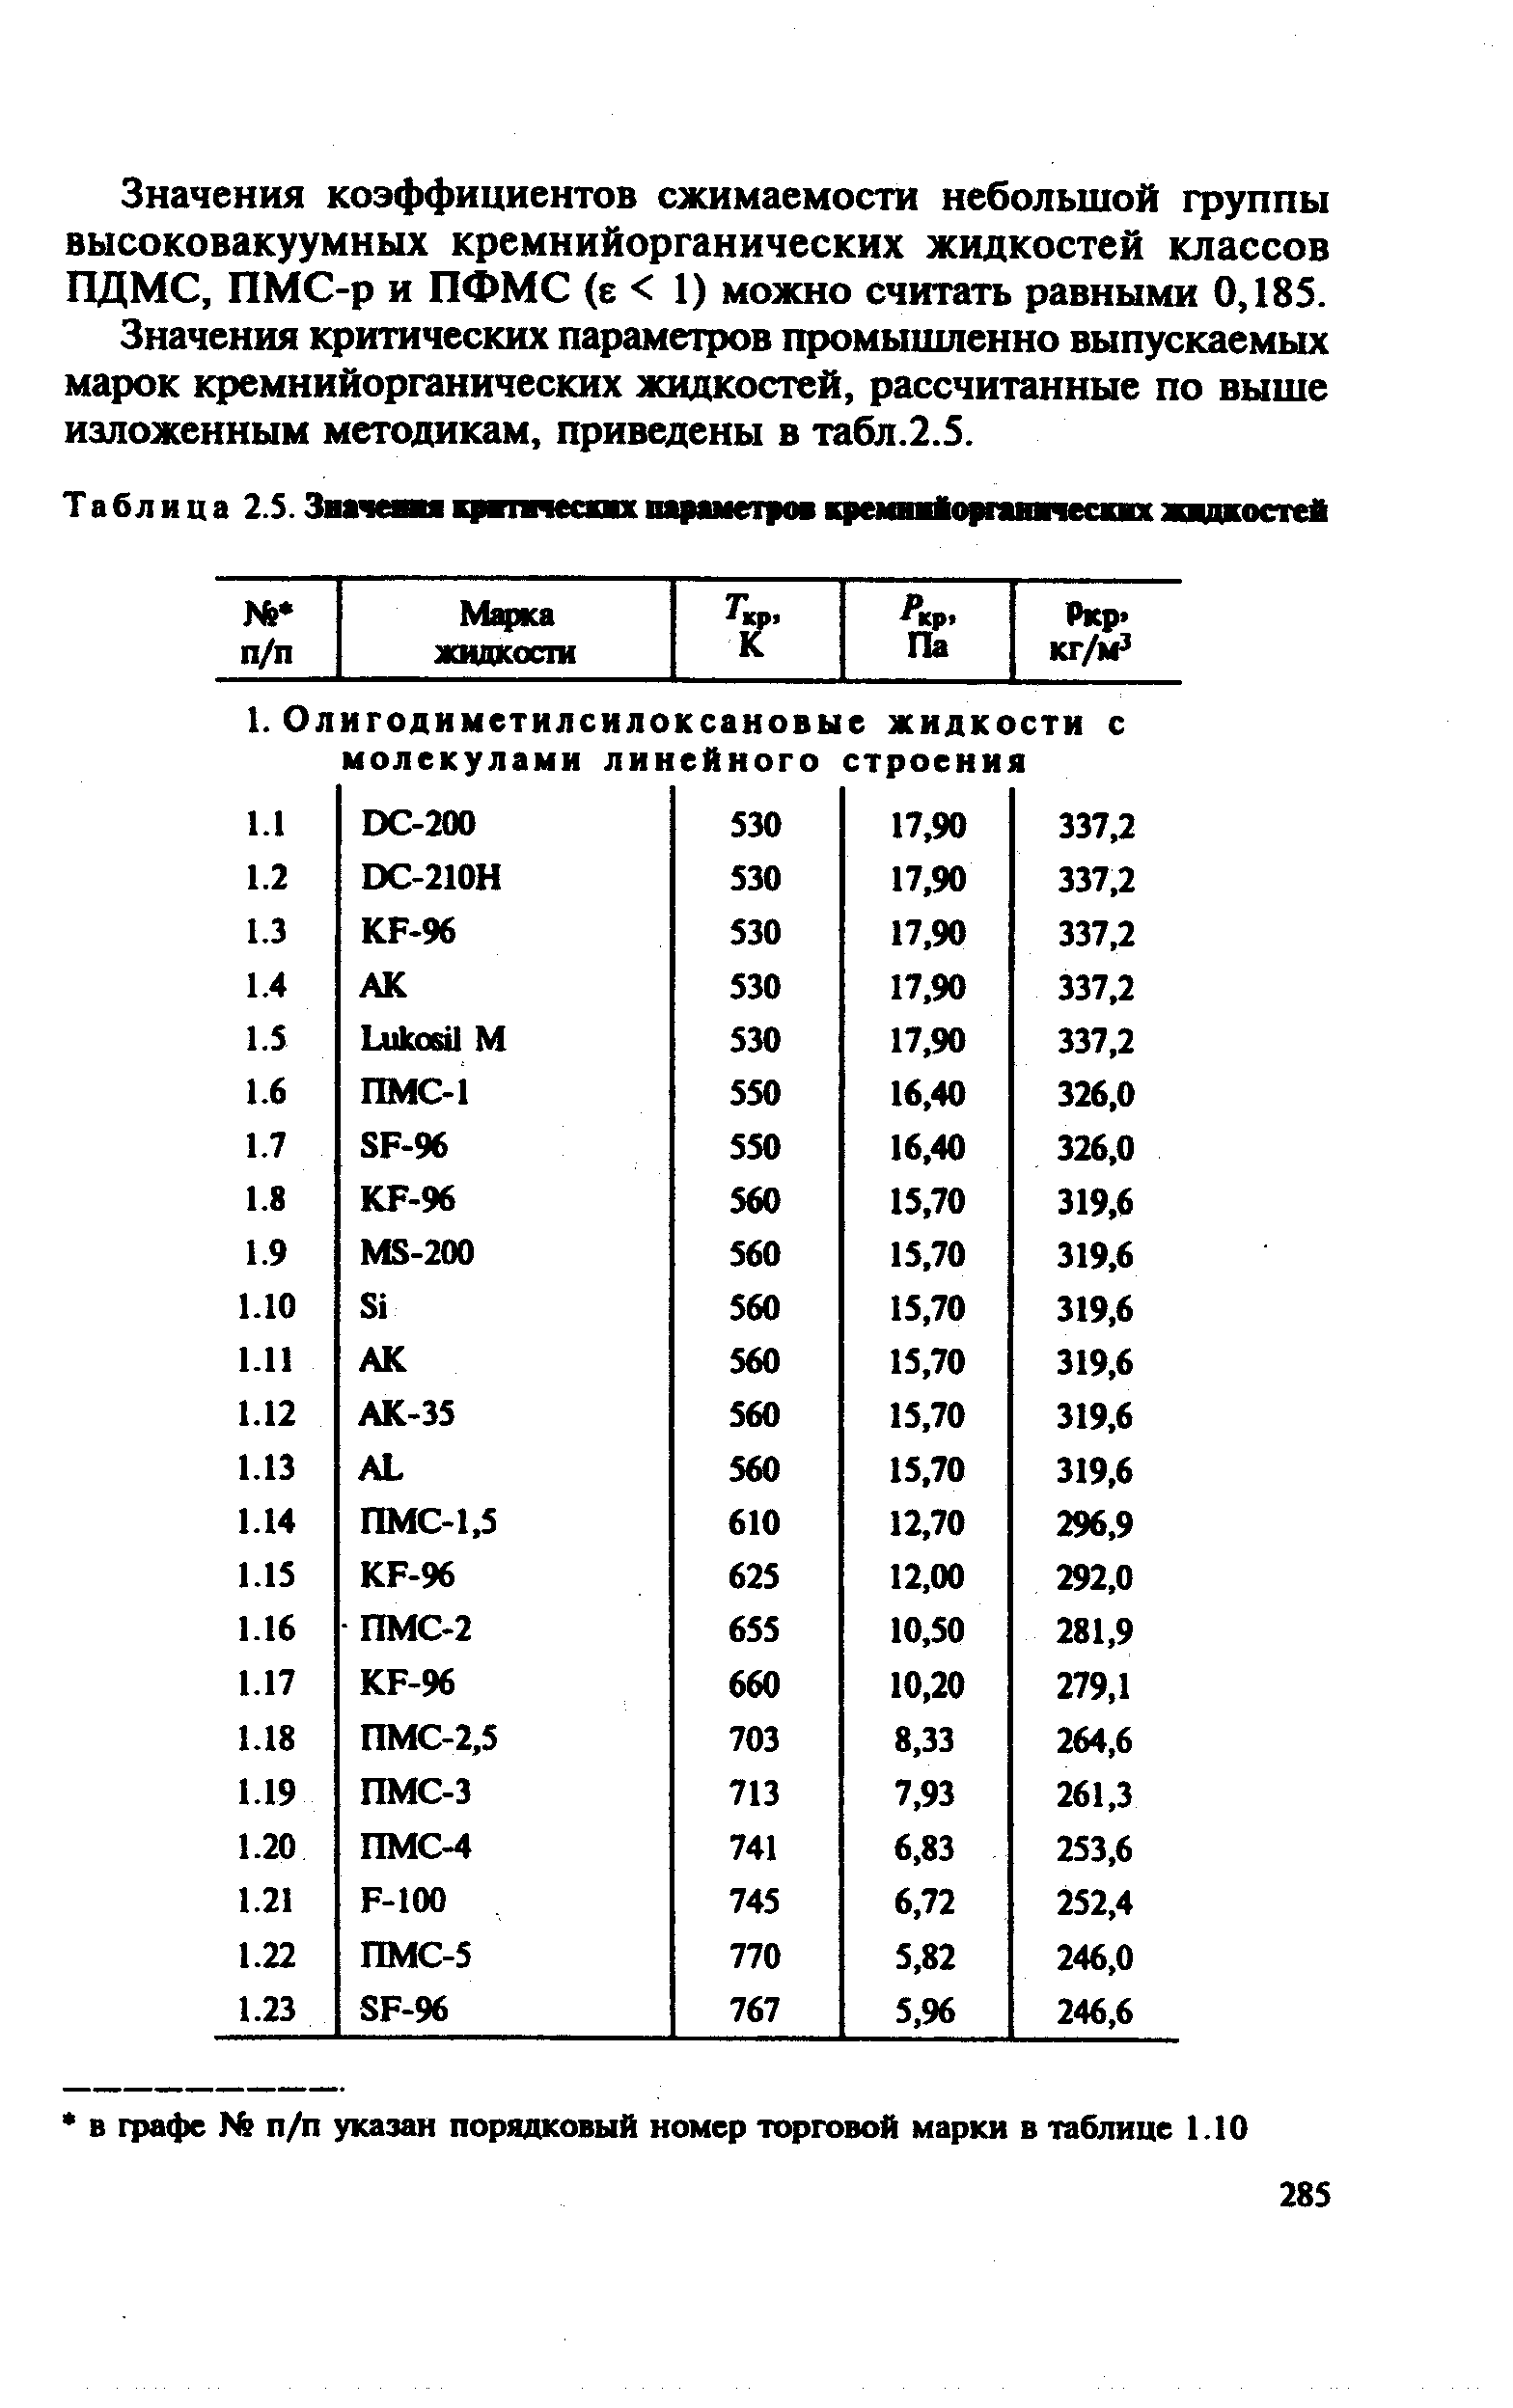 Значения критических параметров промышленно выпускаемых марок кремнийорганических жидкостей, рассчитанные по выше изложенным методикам, приведены в табл.2.5.
